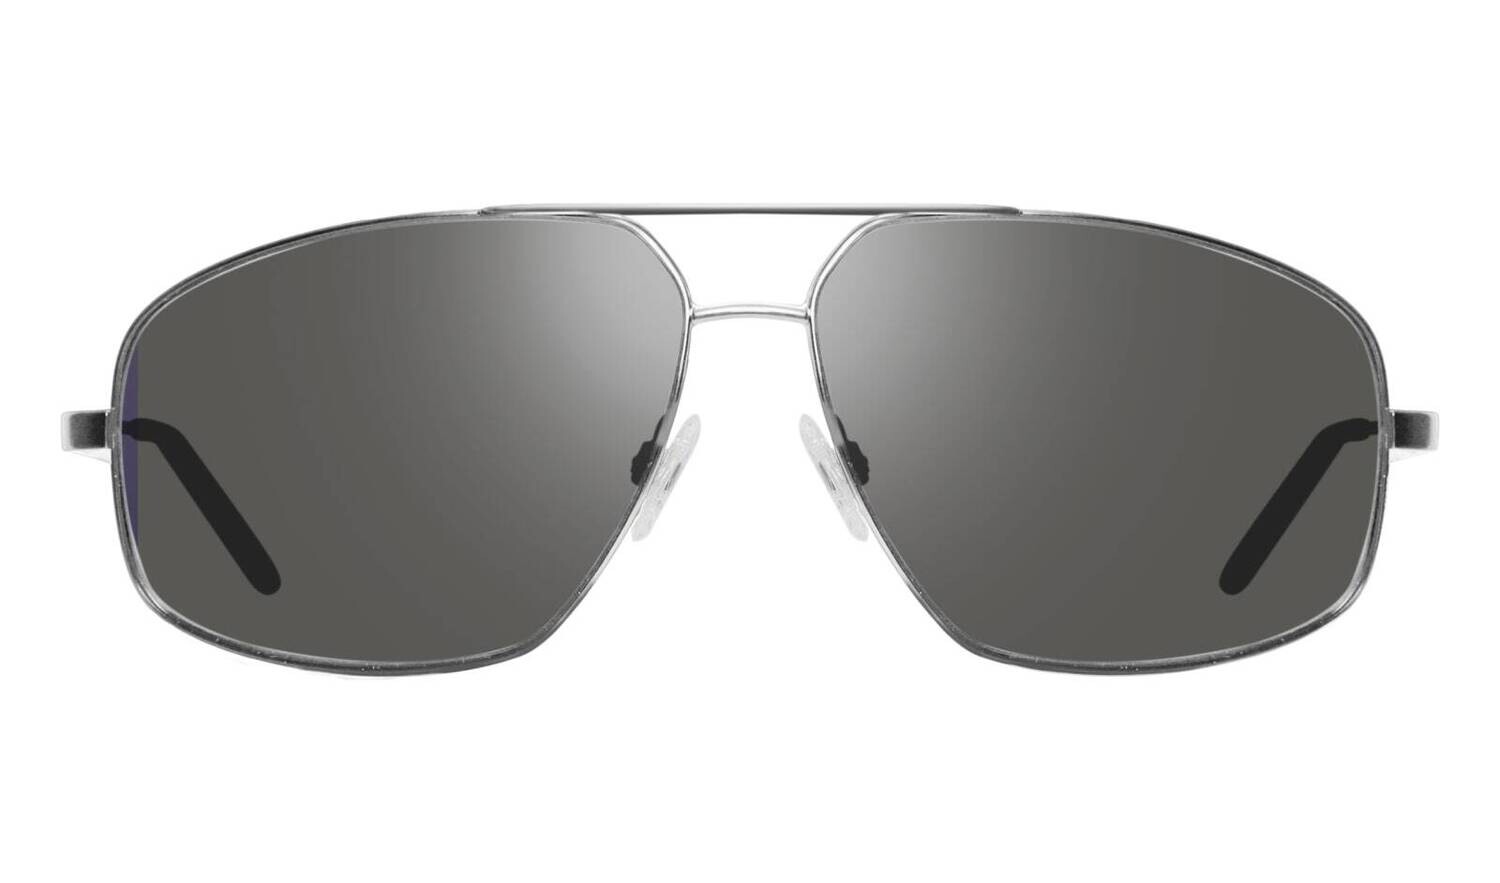 REVO X JEEP CANJON JL 1153 03GY silver / flash grey polarized occhiali